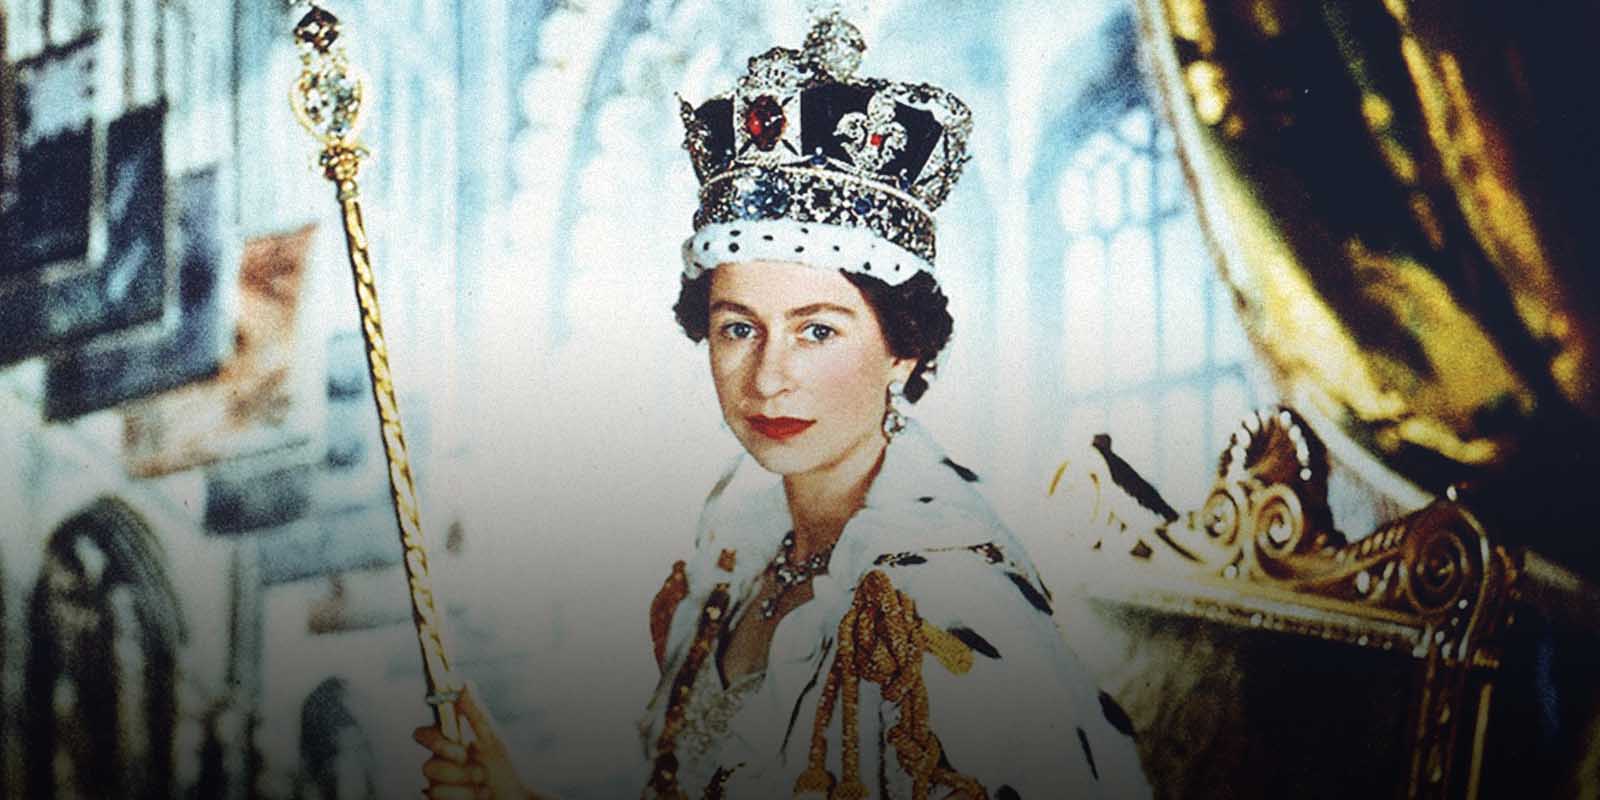 Her Majesty The Queen, Elizabeth II